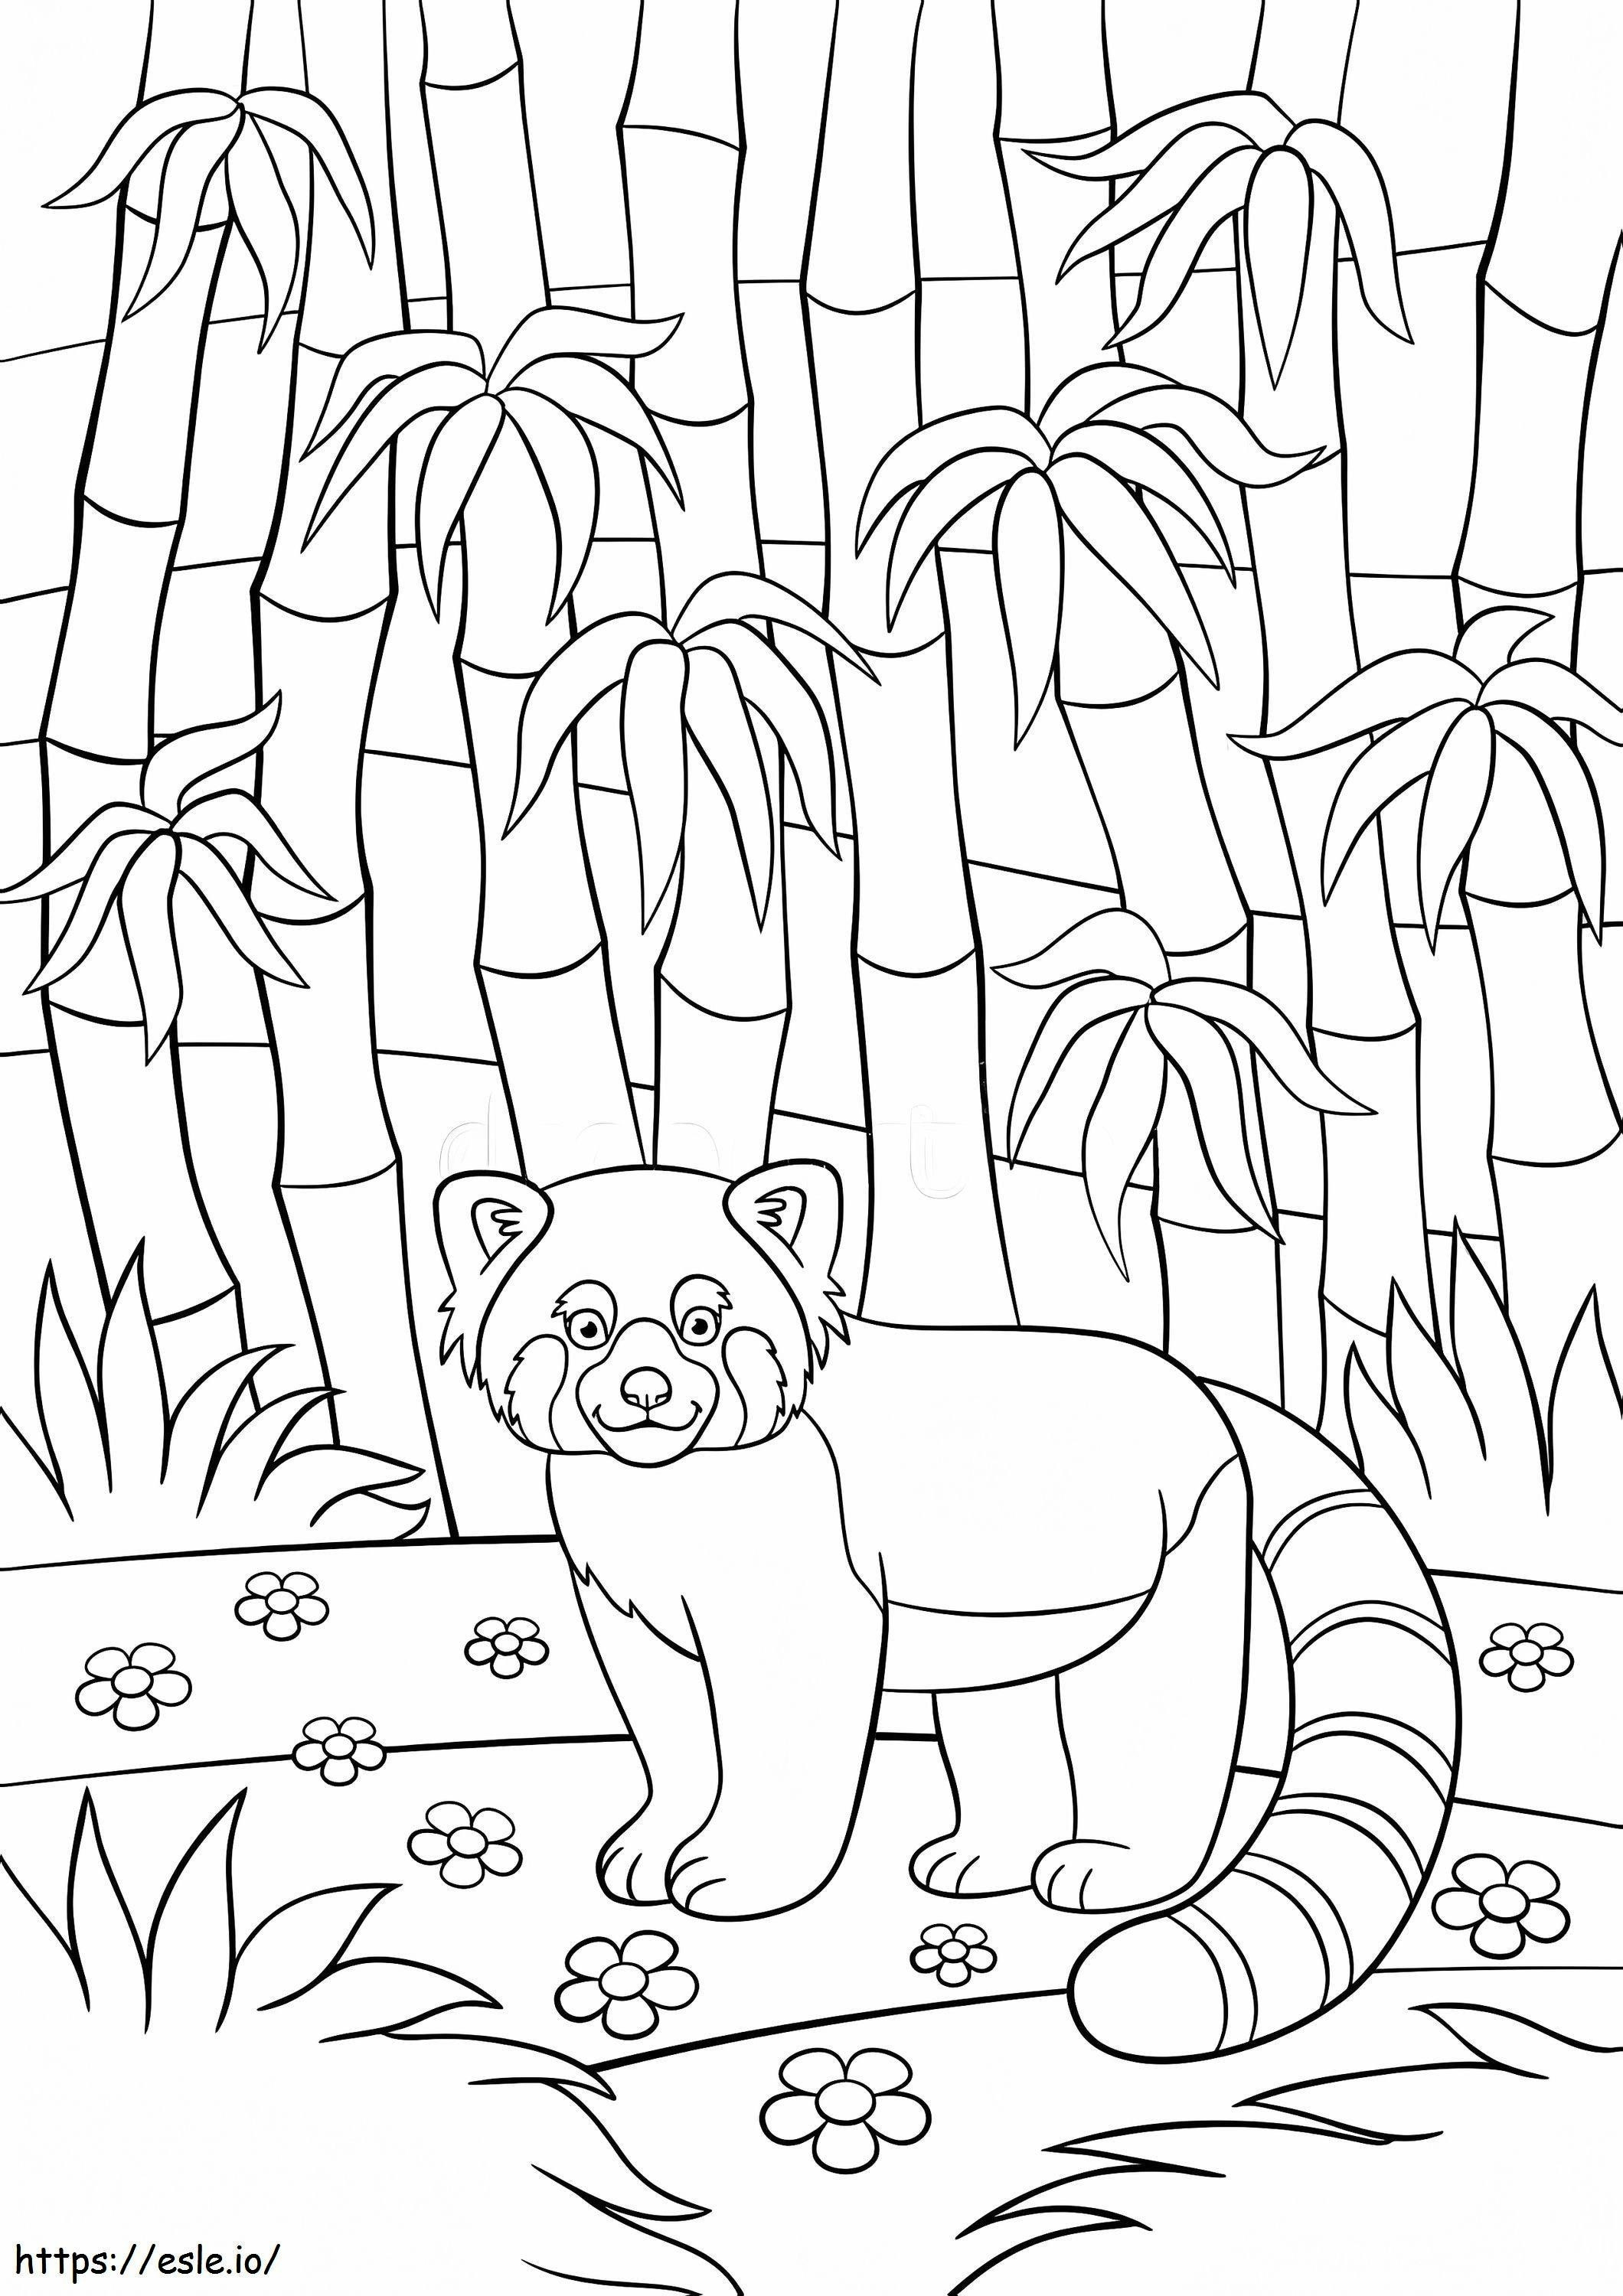 Rode Panda In De Jungle kleurplaat kleurplaat